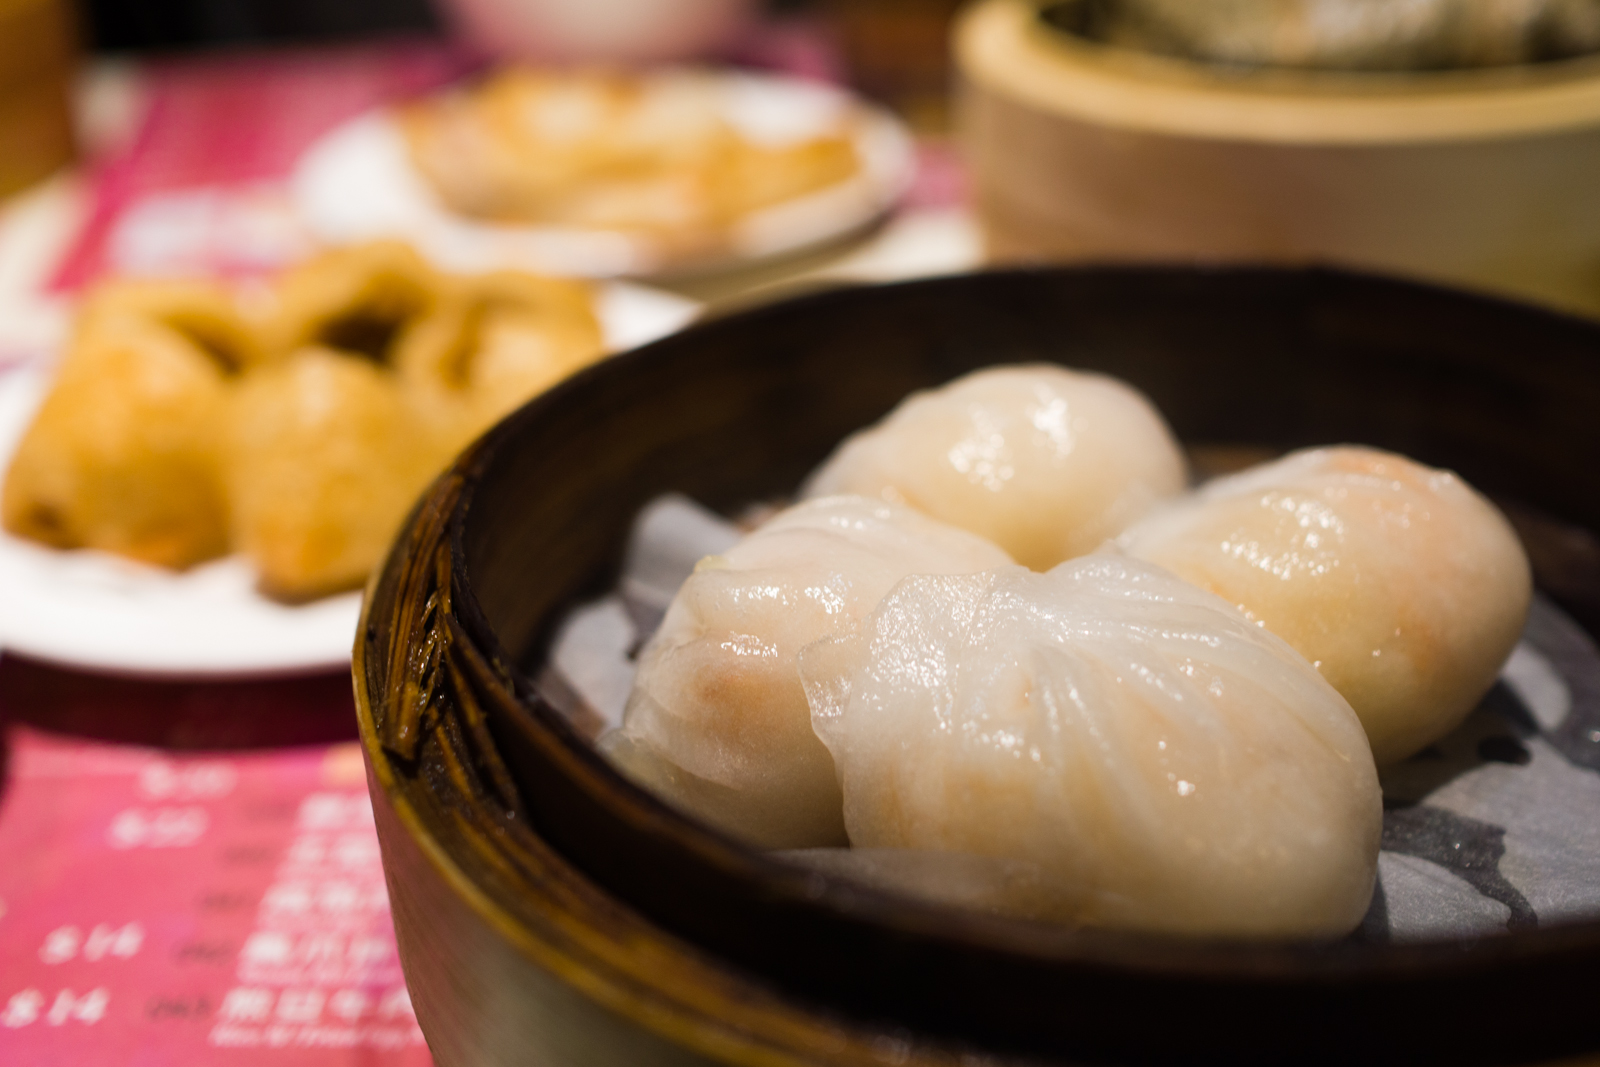 One Dim Sum Review: Michelin Star Dim Sum Restaurant in Hong Kong